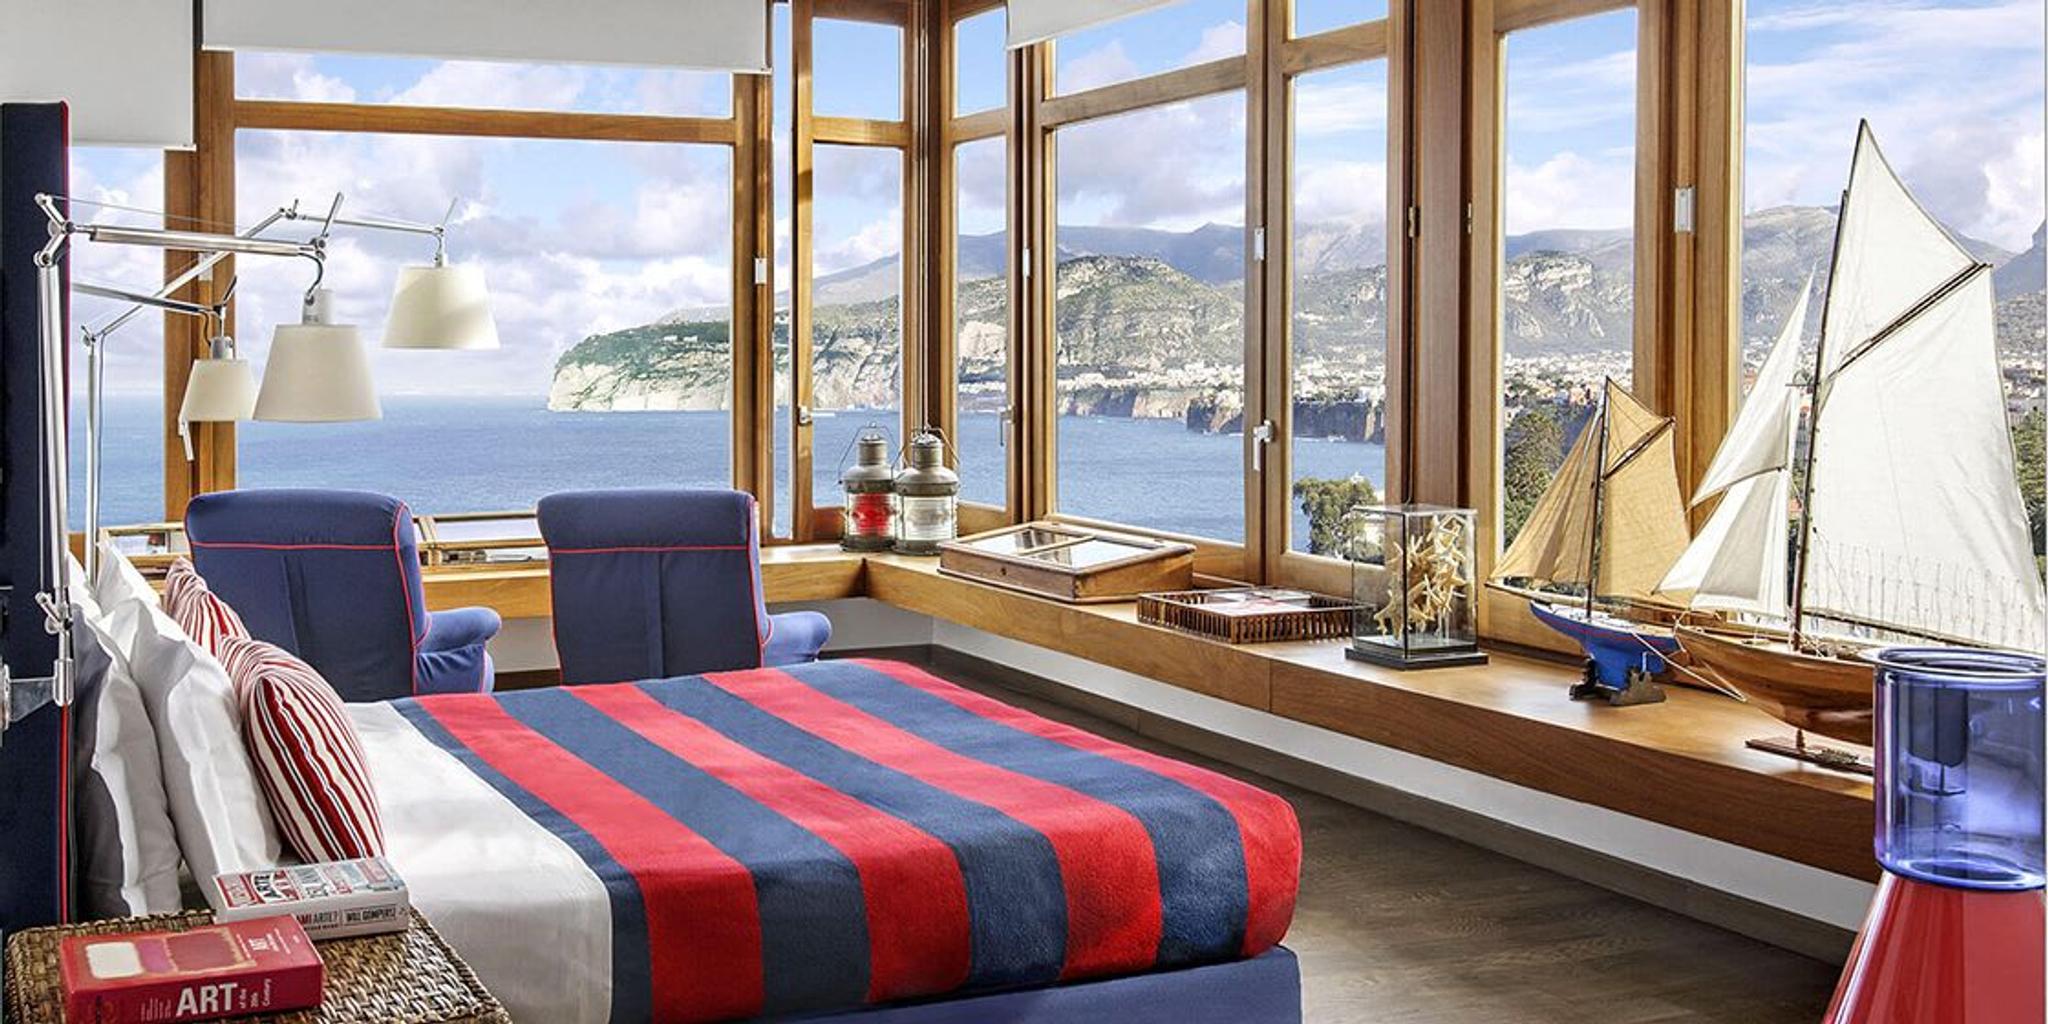 Impresionantes vistas y decoración en una de las habitaciones del encantador hotel La Minervetta de Sorrento.